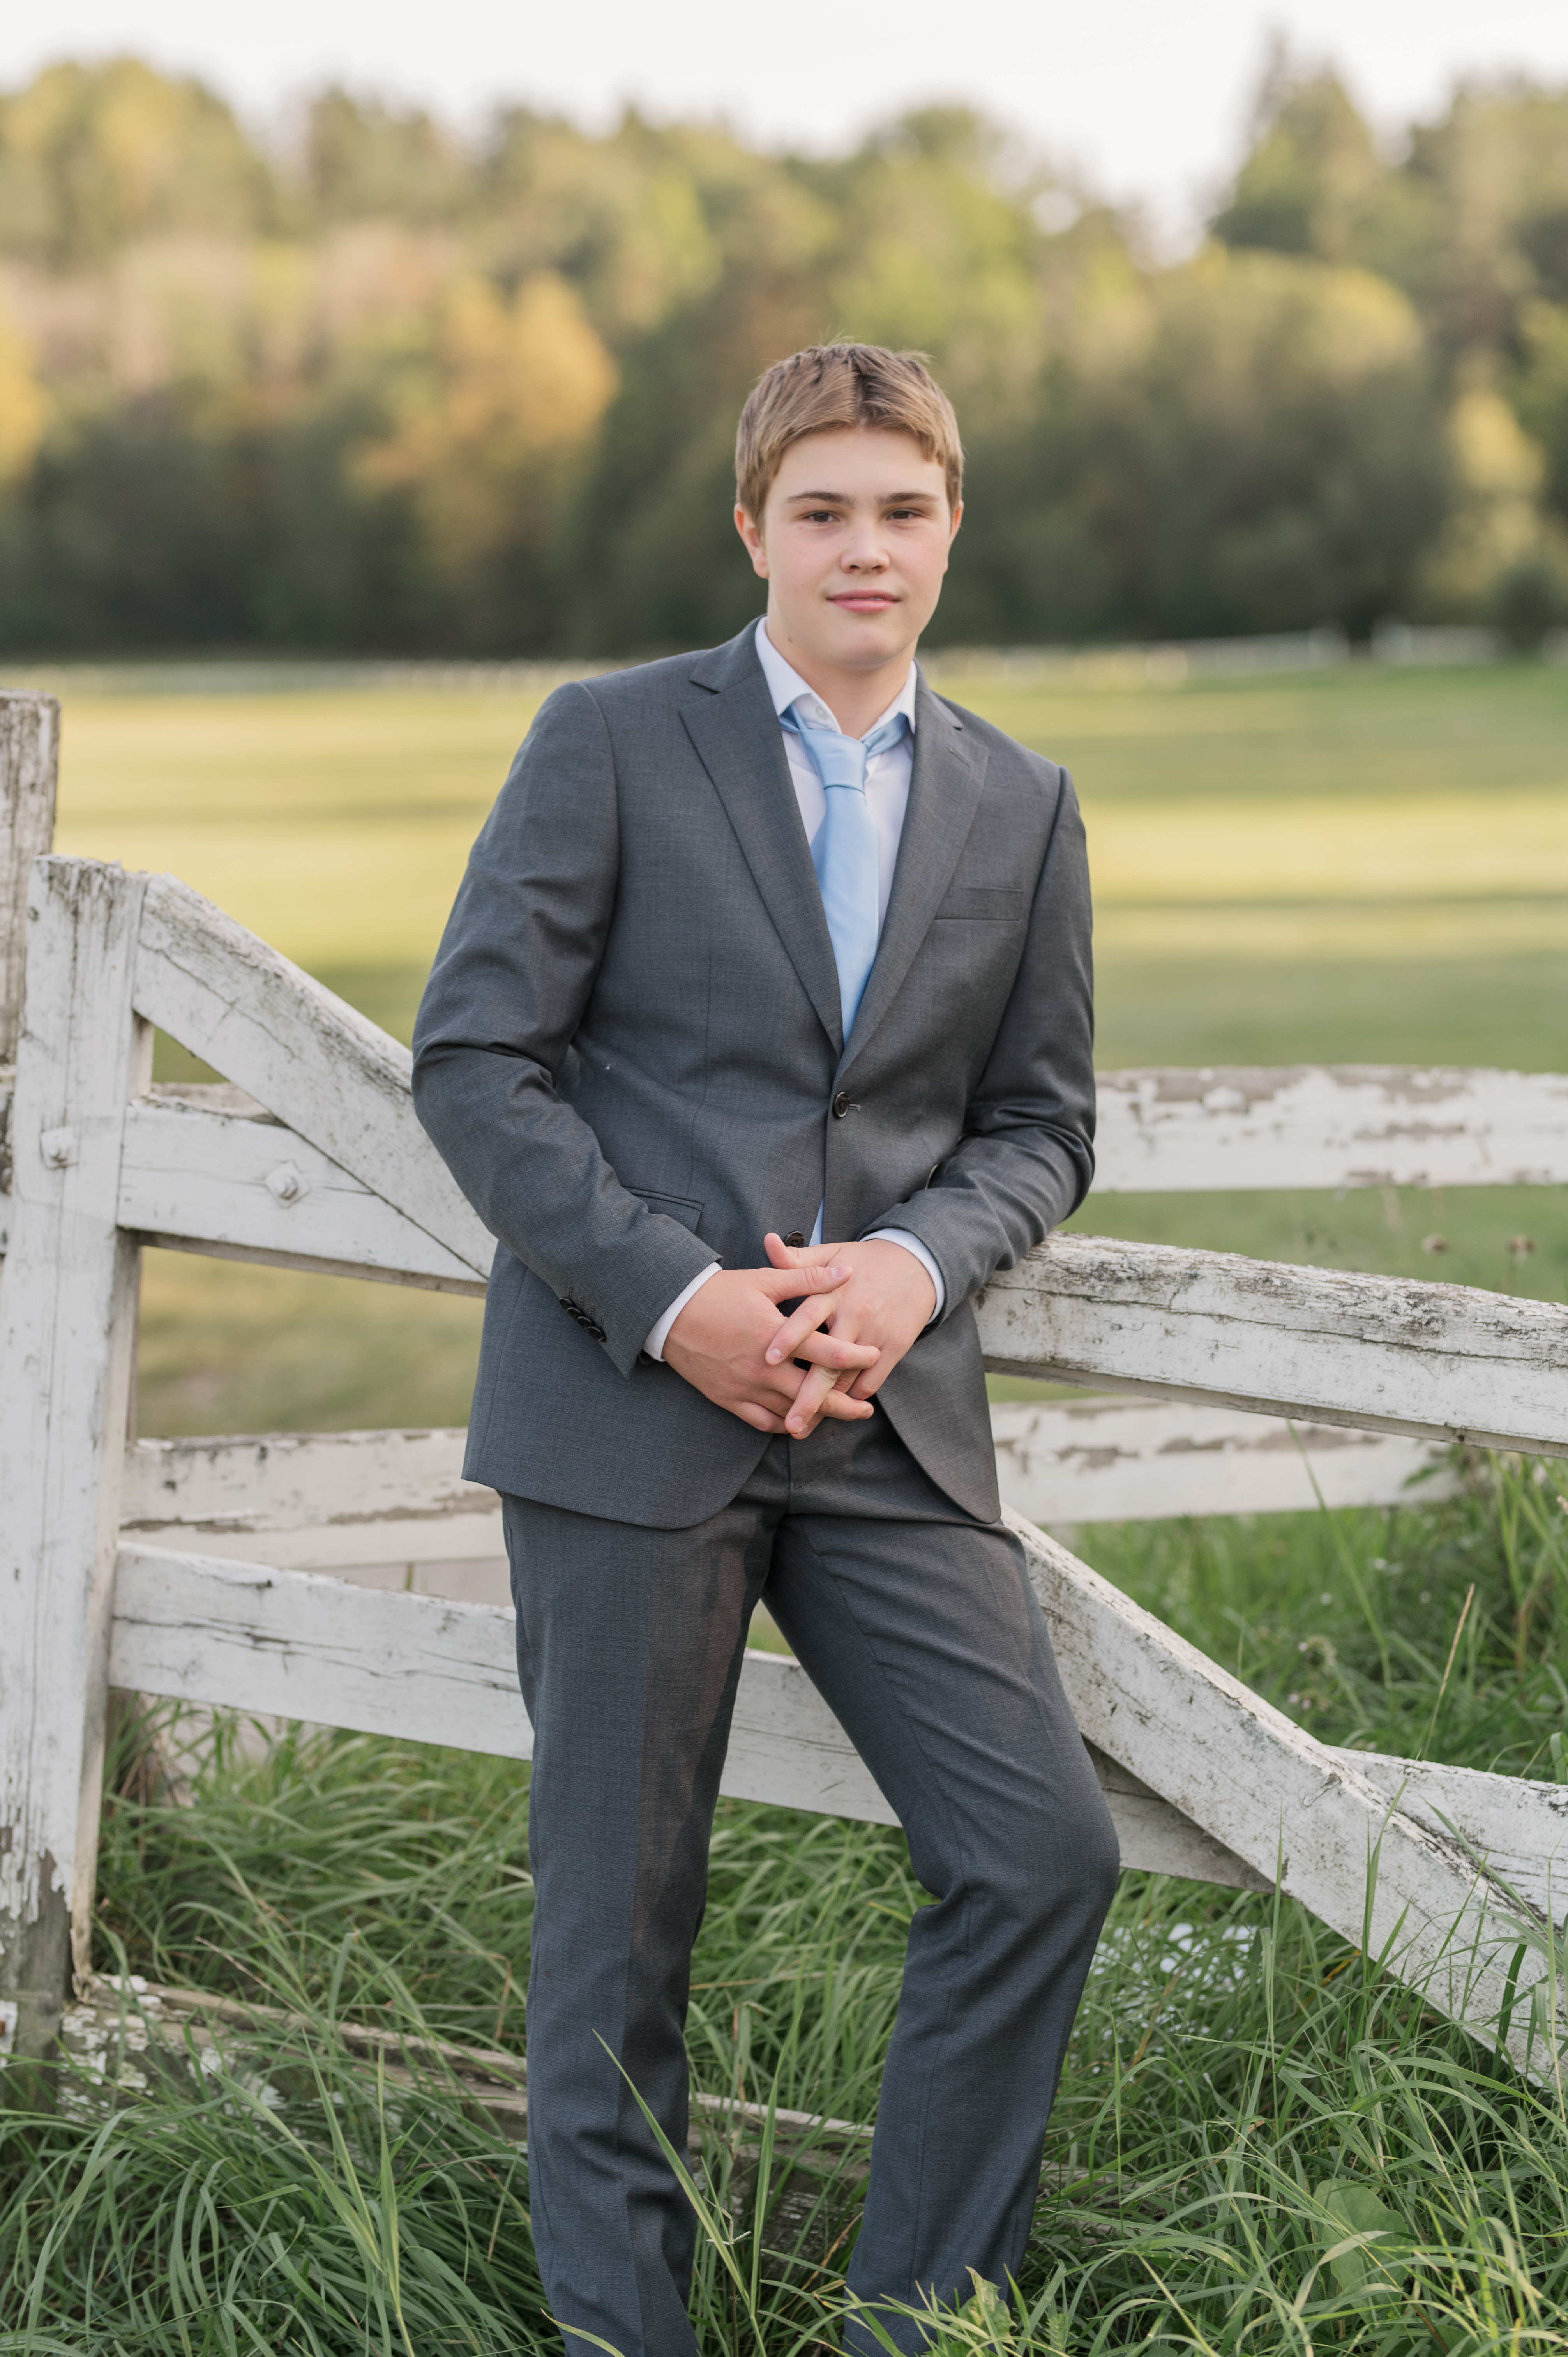 Konfirmantfotografering - Gutt i grå dress med blått slips 